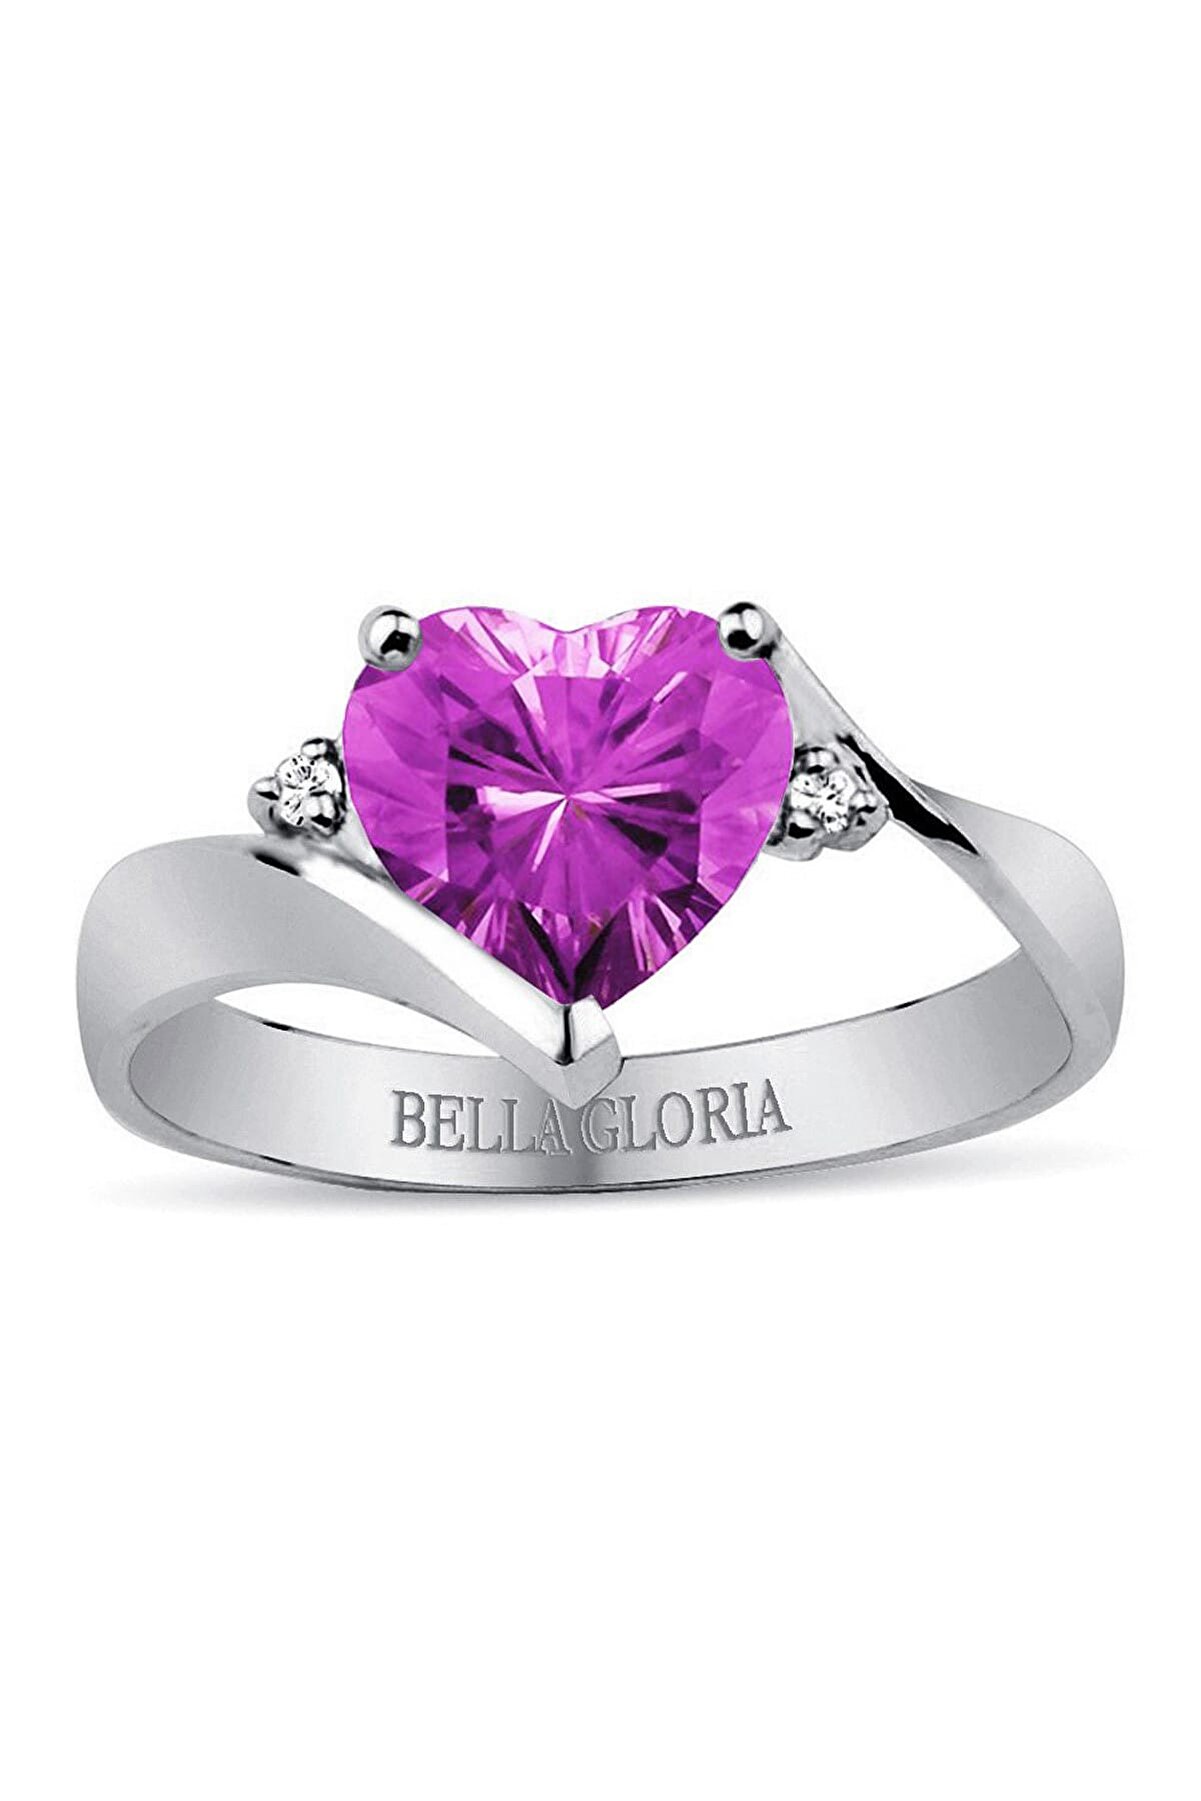 Bella Gloria Pırlanta Ametist Aşk Yüzüğü (GPY0010)